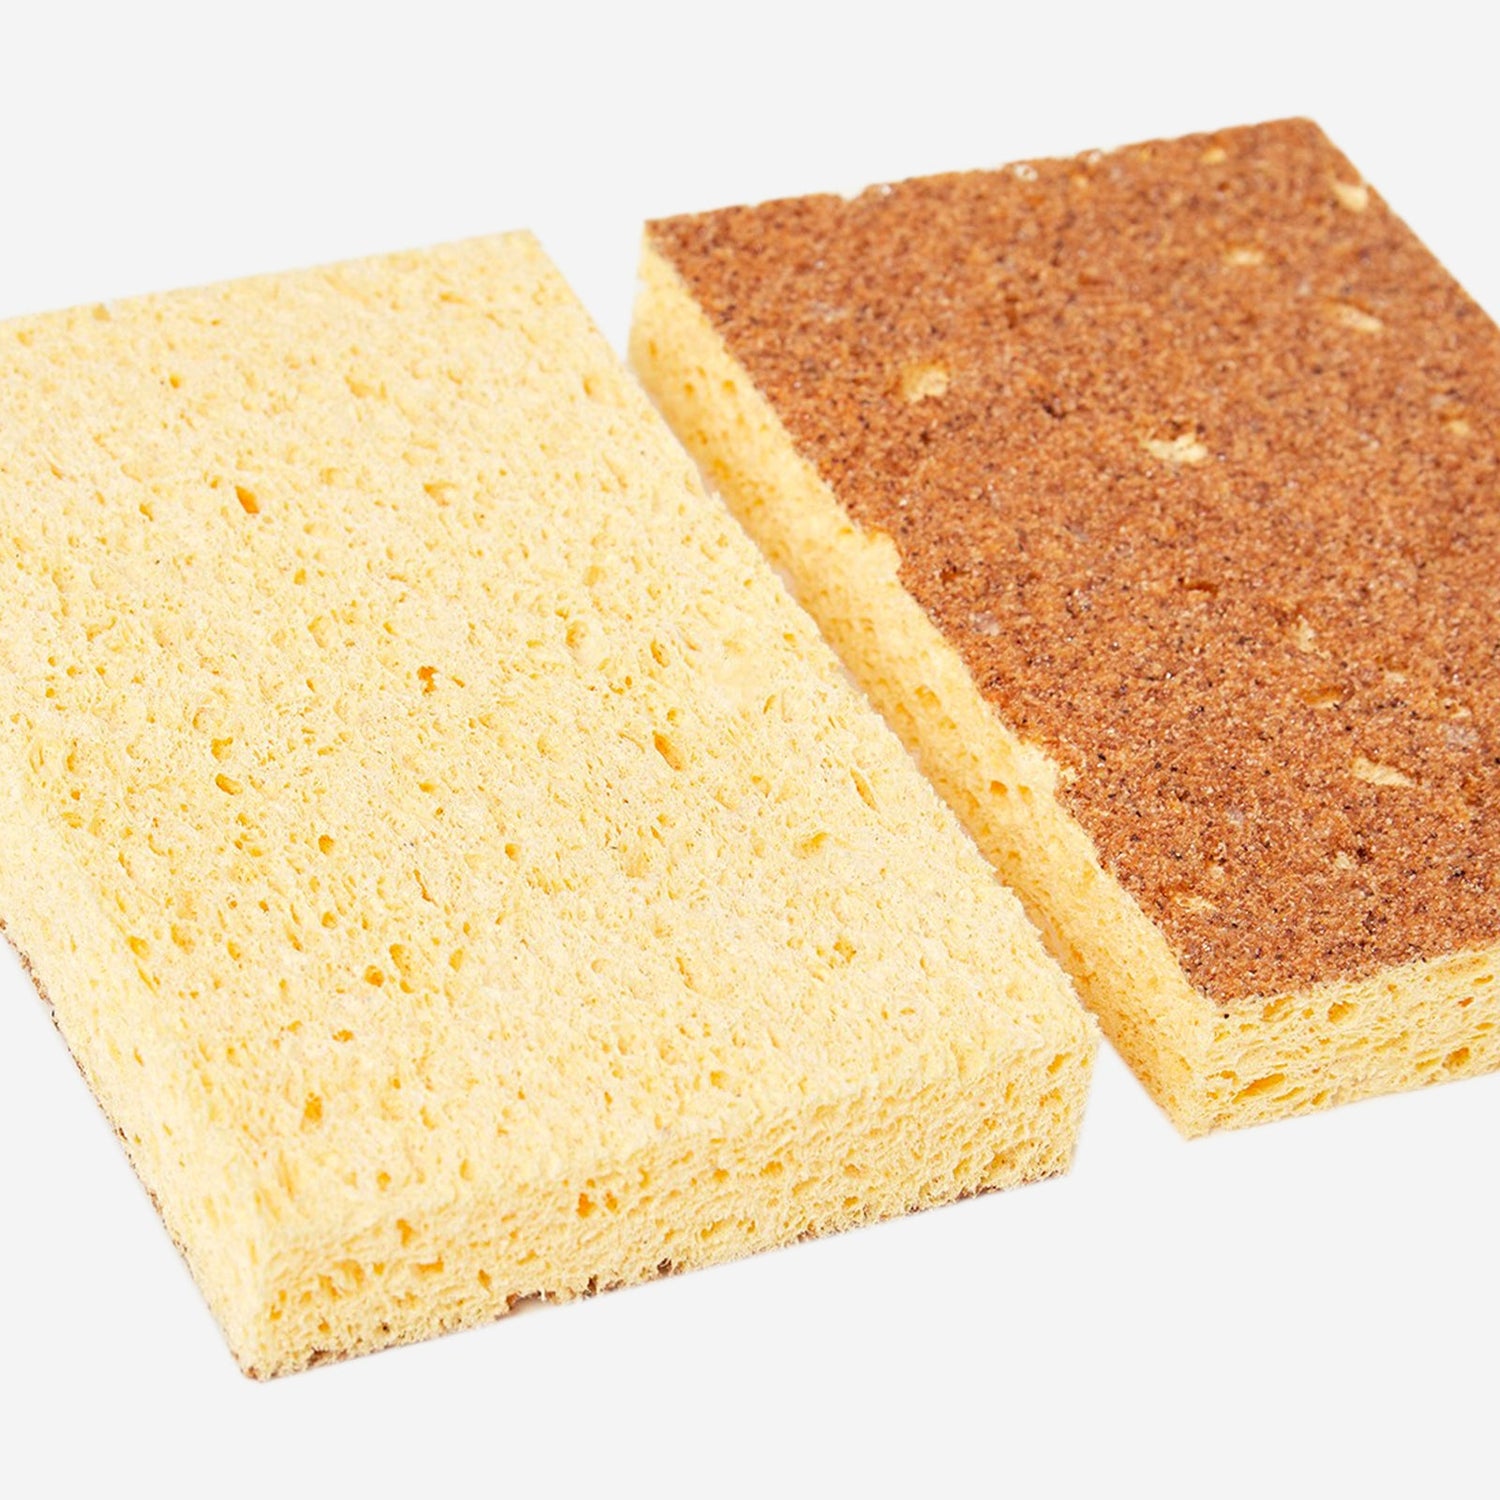 Natural dishwashing sponge (pack of 2)